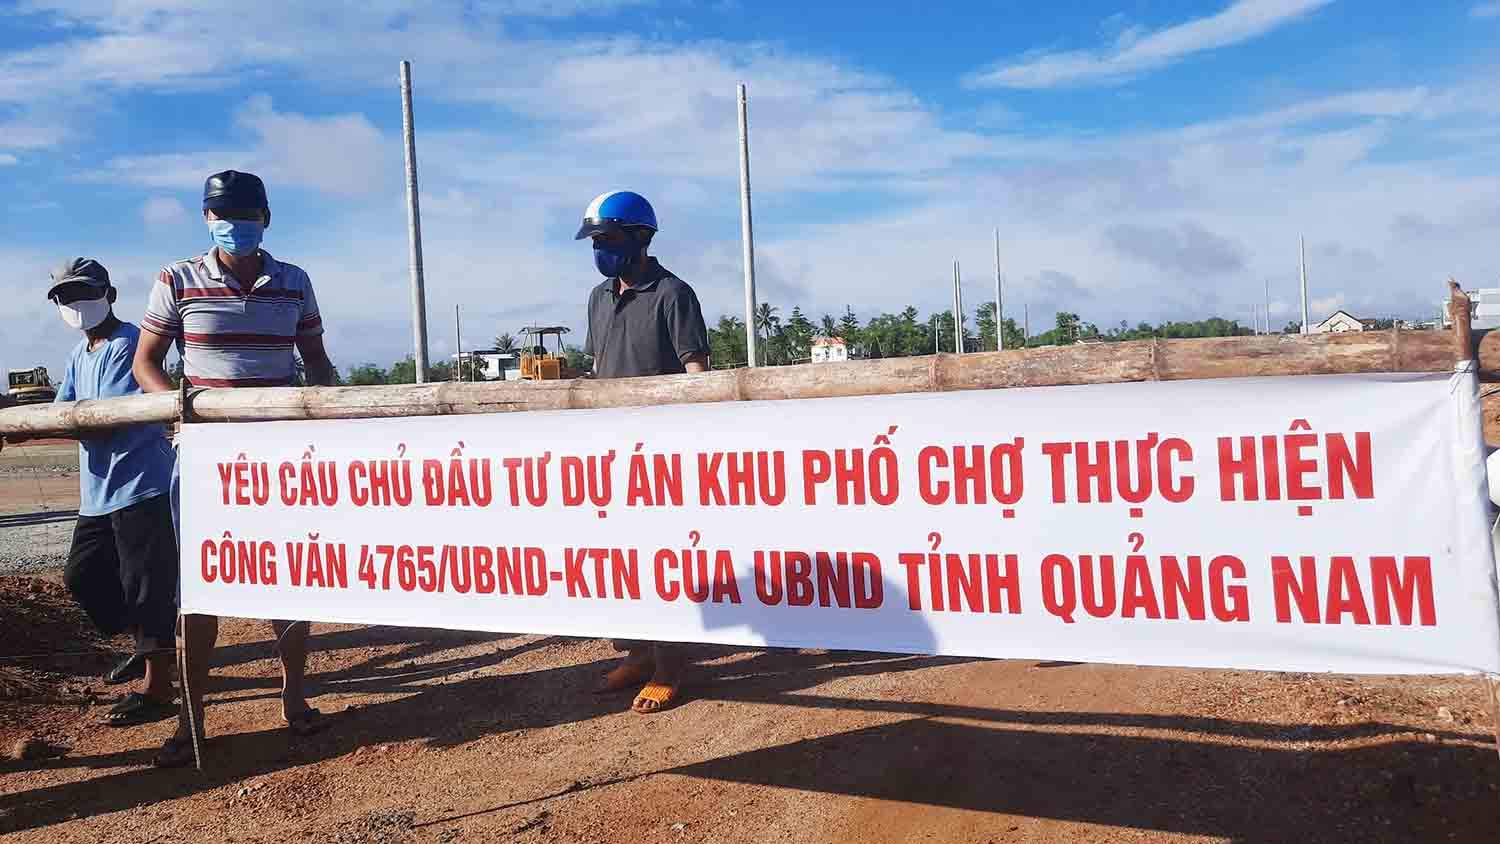 Người dân căng băng rôn yêu cầu chủ đầu tư thực hiện chỉ đạo của UBND tỉnh Quảng Nam.